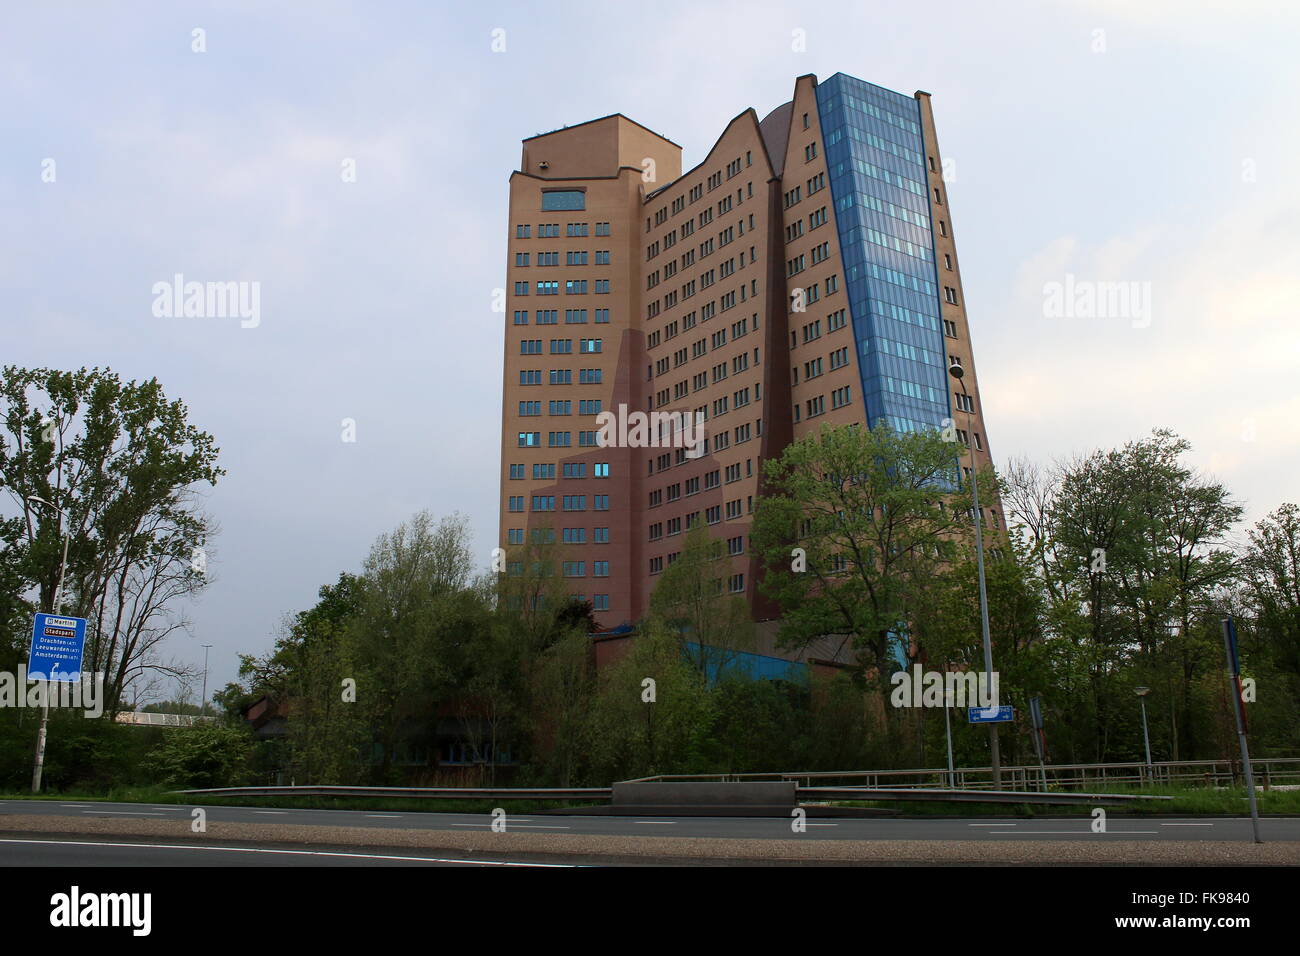 Immeuble de bureaux et siège social de N.V. Nederlandse Gasunie company à Groningen, Pays-Bas Banque D'Images